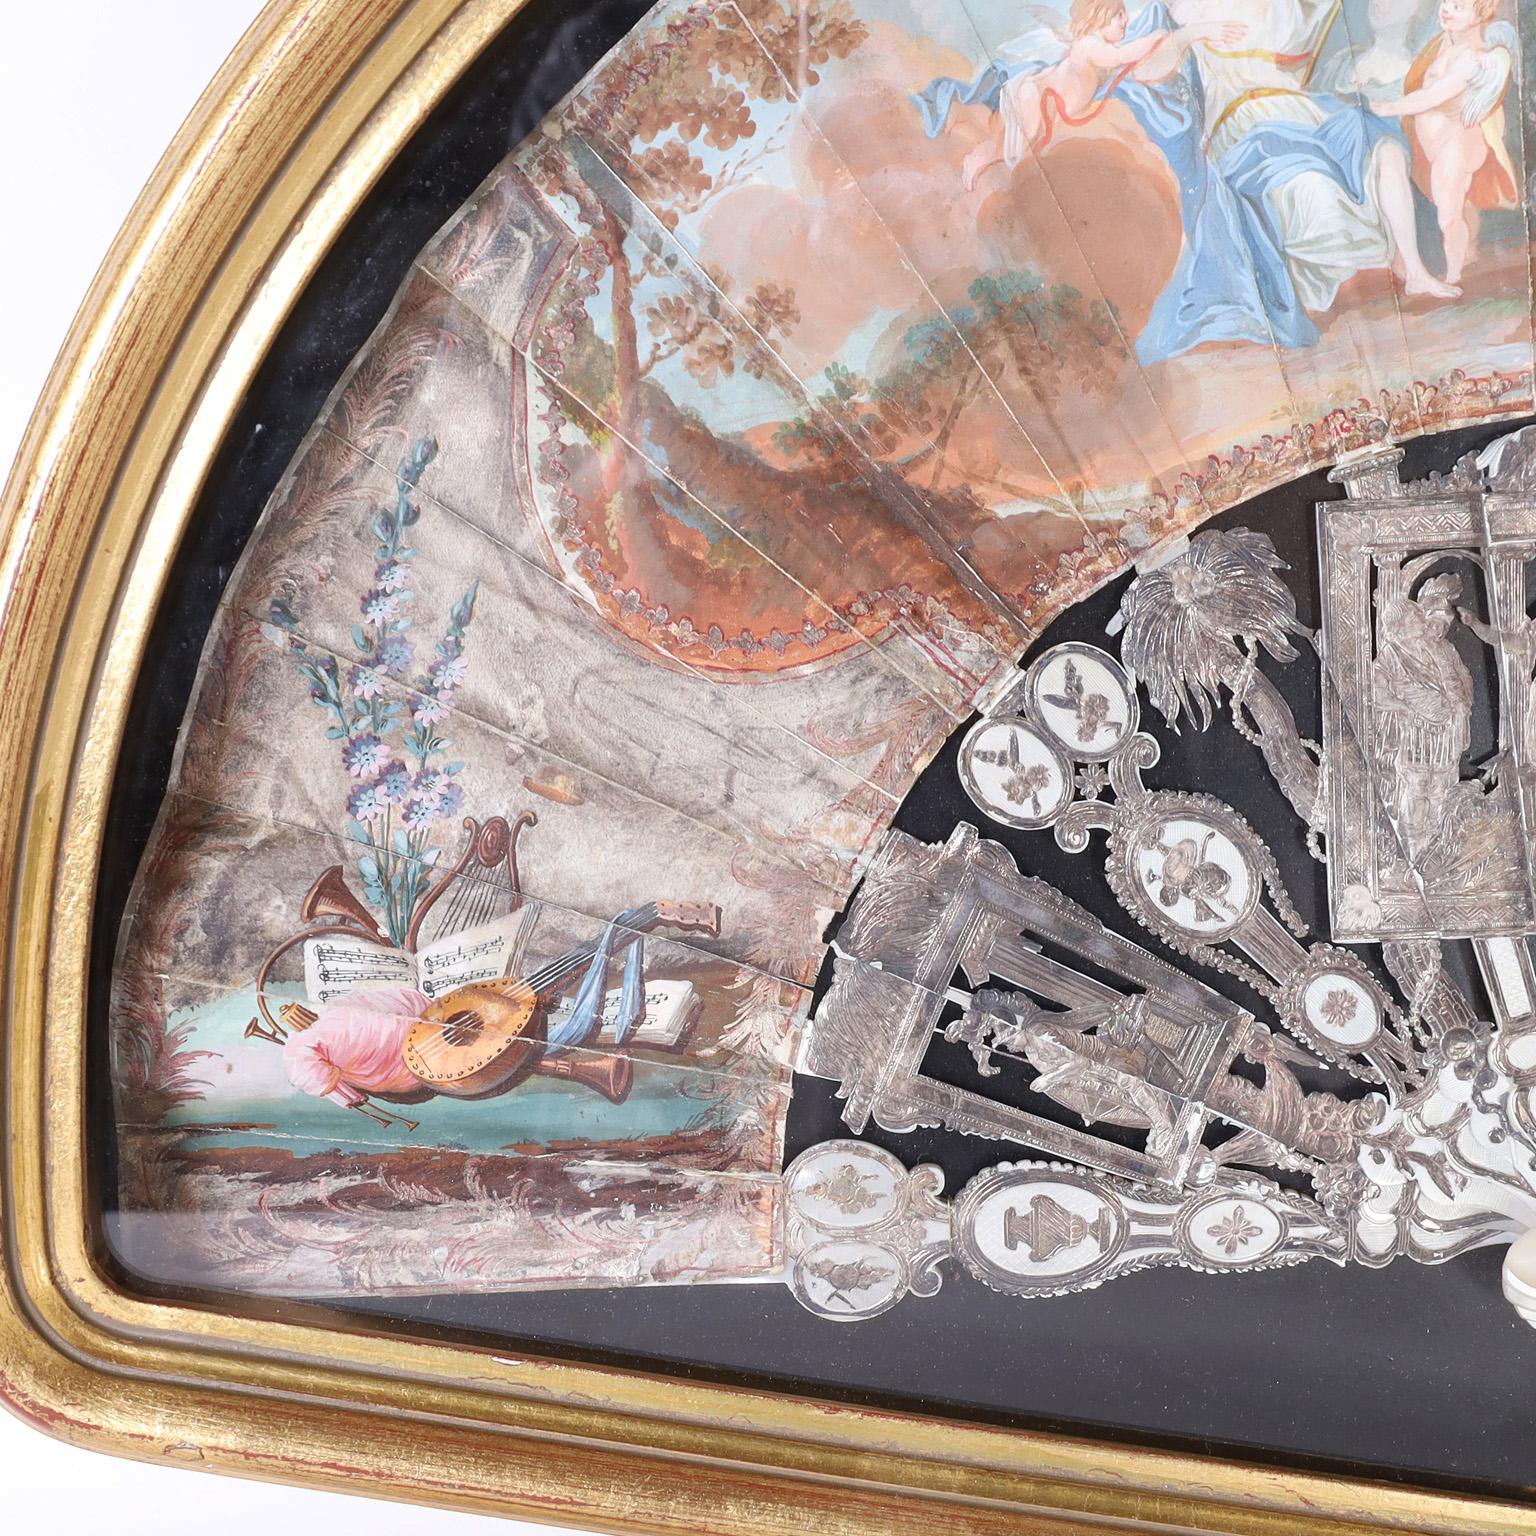 Beeindruckender italienischer Handfächer aus dem 19. Jahrhundert, bemerkenswert gut erhalten mit versilberten Metallstäben und Schutzvorrichtungen, auf denen antike Götter, Palmen und klassische Embleme dargestellt sind. Die Papierblätter sind